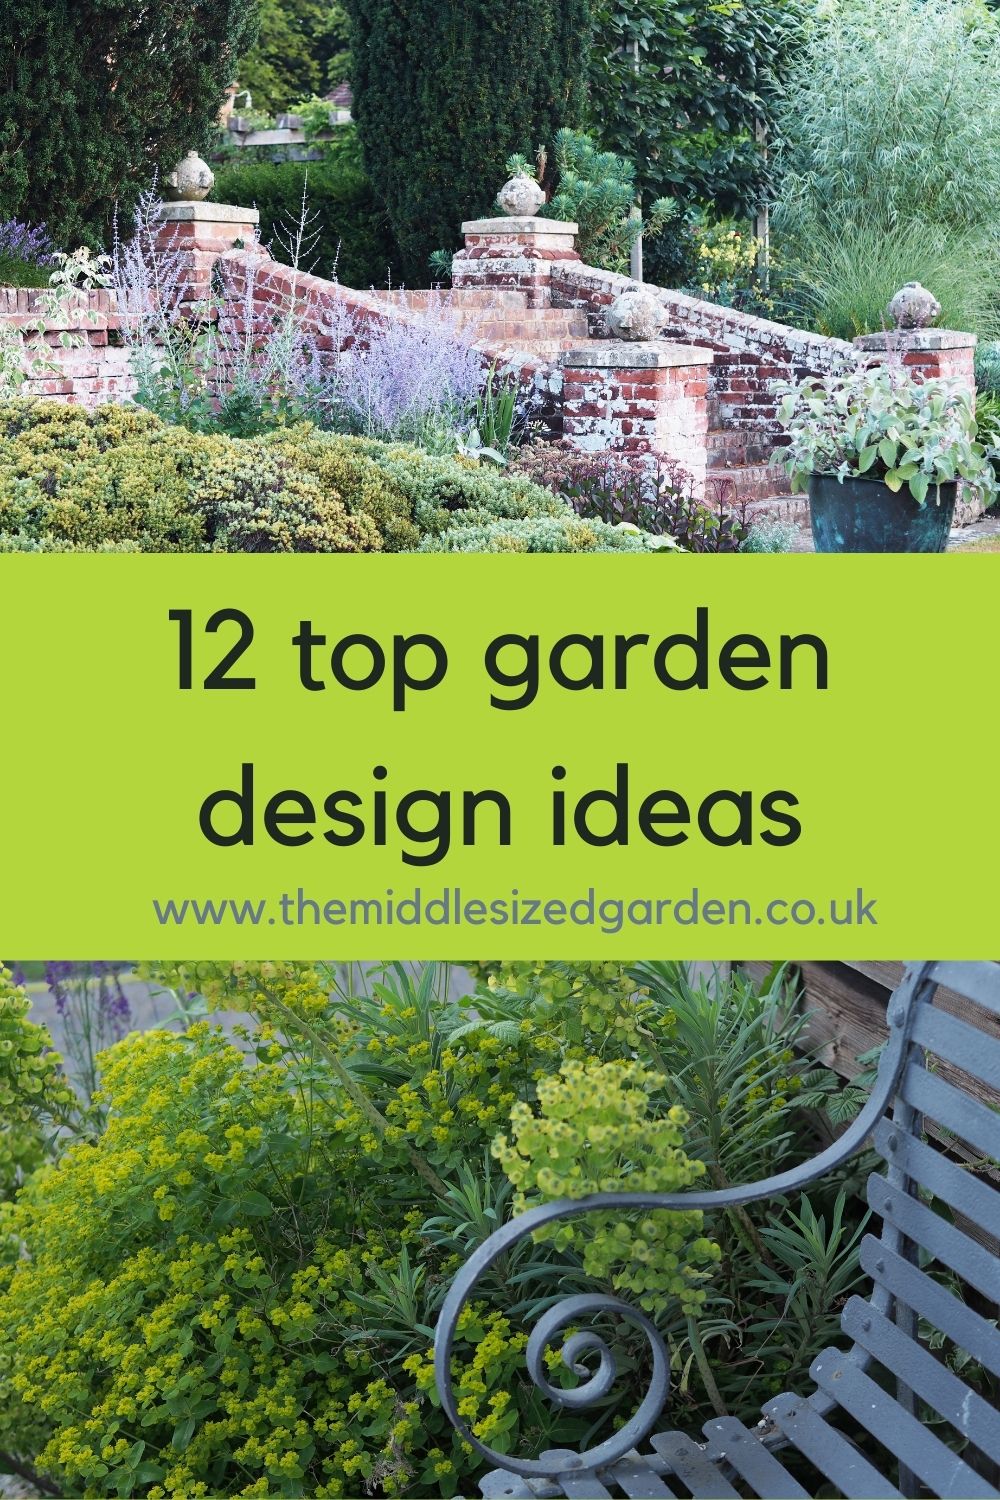 How to choose a garden style   18 beautiful garden design ideas ...